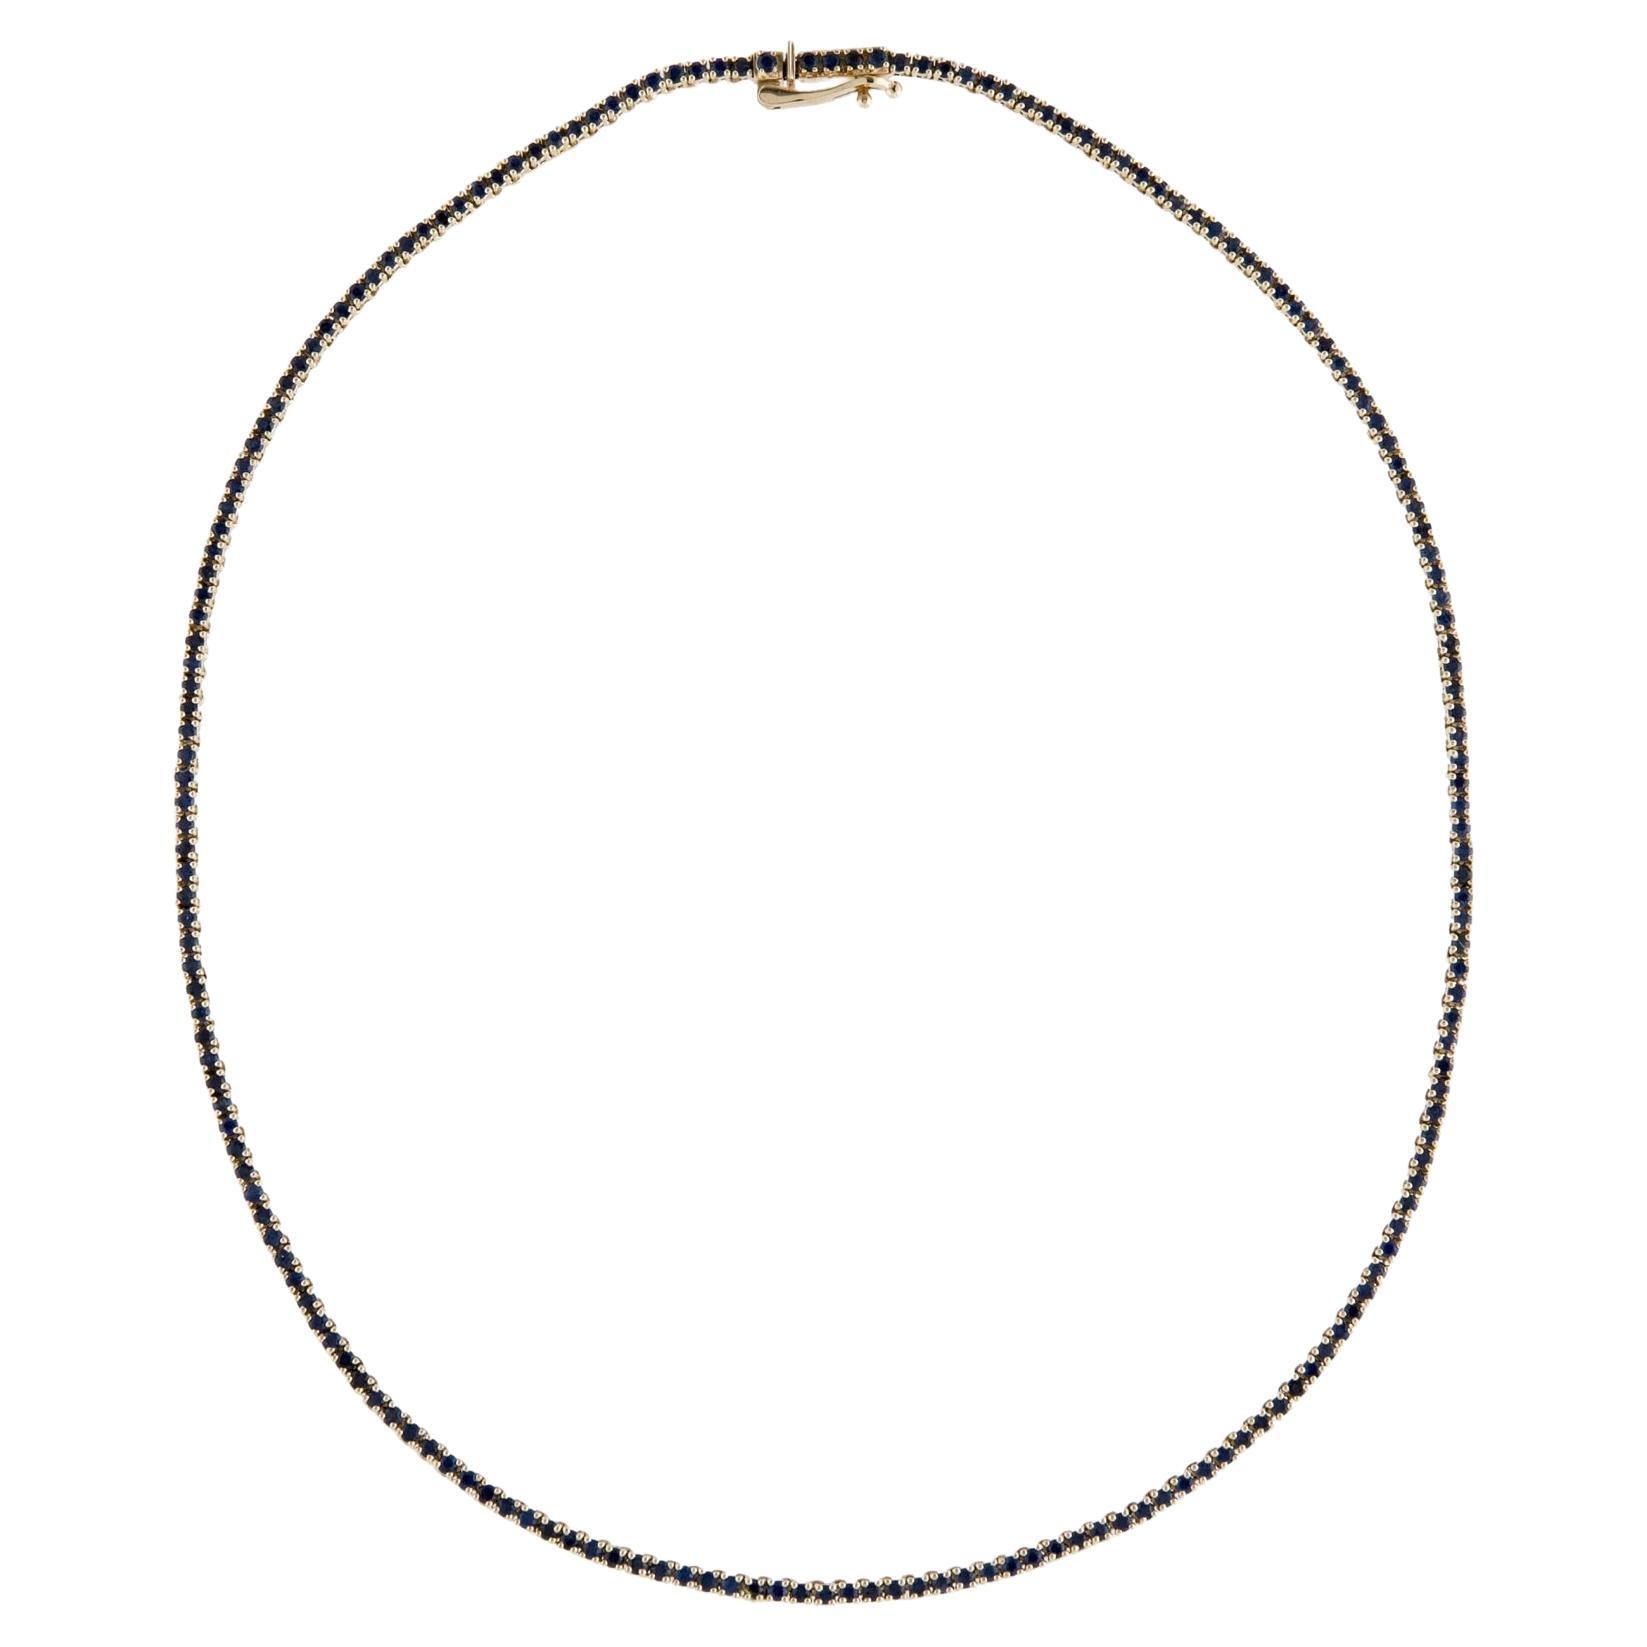 Exquisite 14K Sapphire Chain Necklace - Elegant Gemstone Statement Jewelry